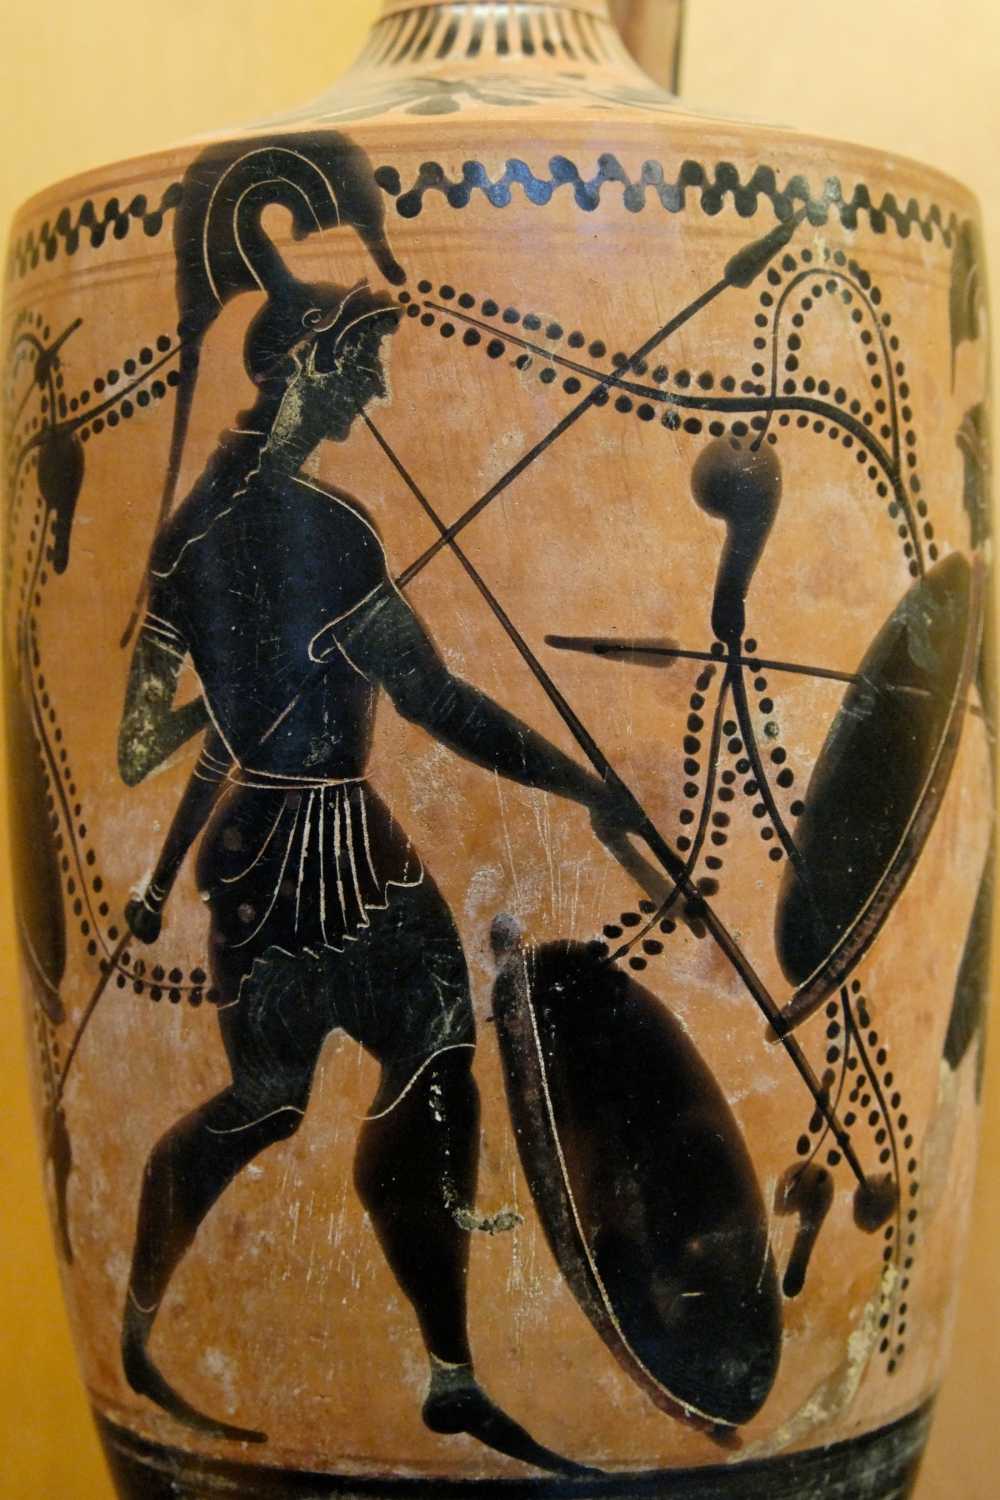 Un hoplite sonne la salpinx... Dessin gravé sur un lécythe attique (vase à huiles parfumées), fin du VIe siècle ou début du Ve siècle av. J.-C. © Wikimedia Commons